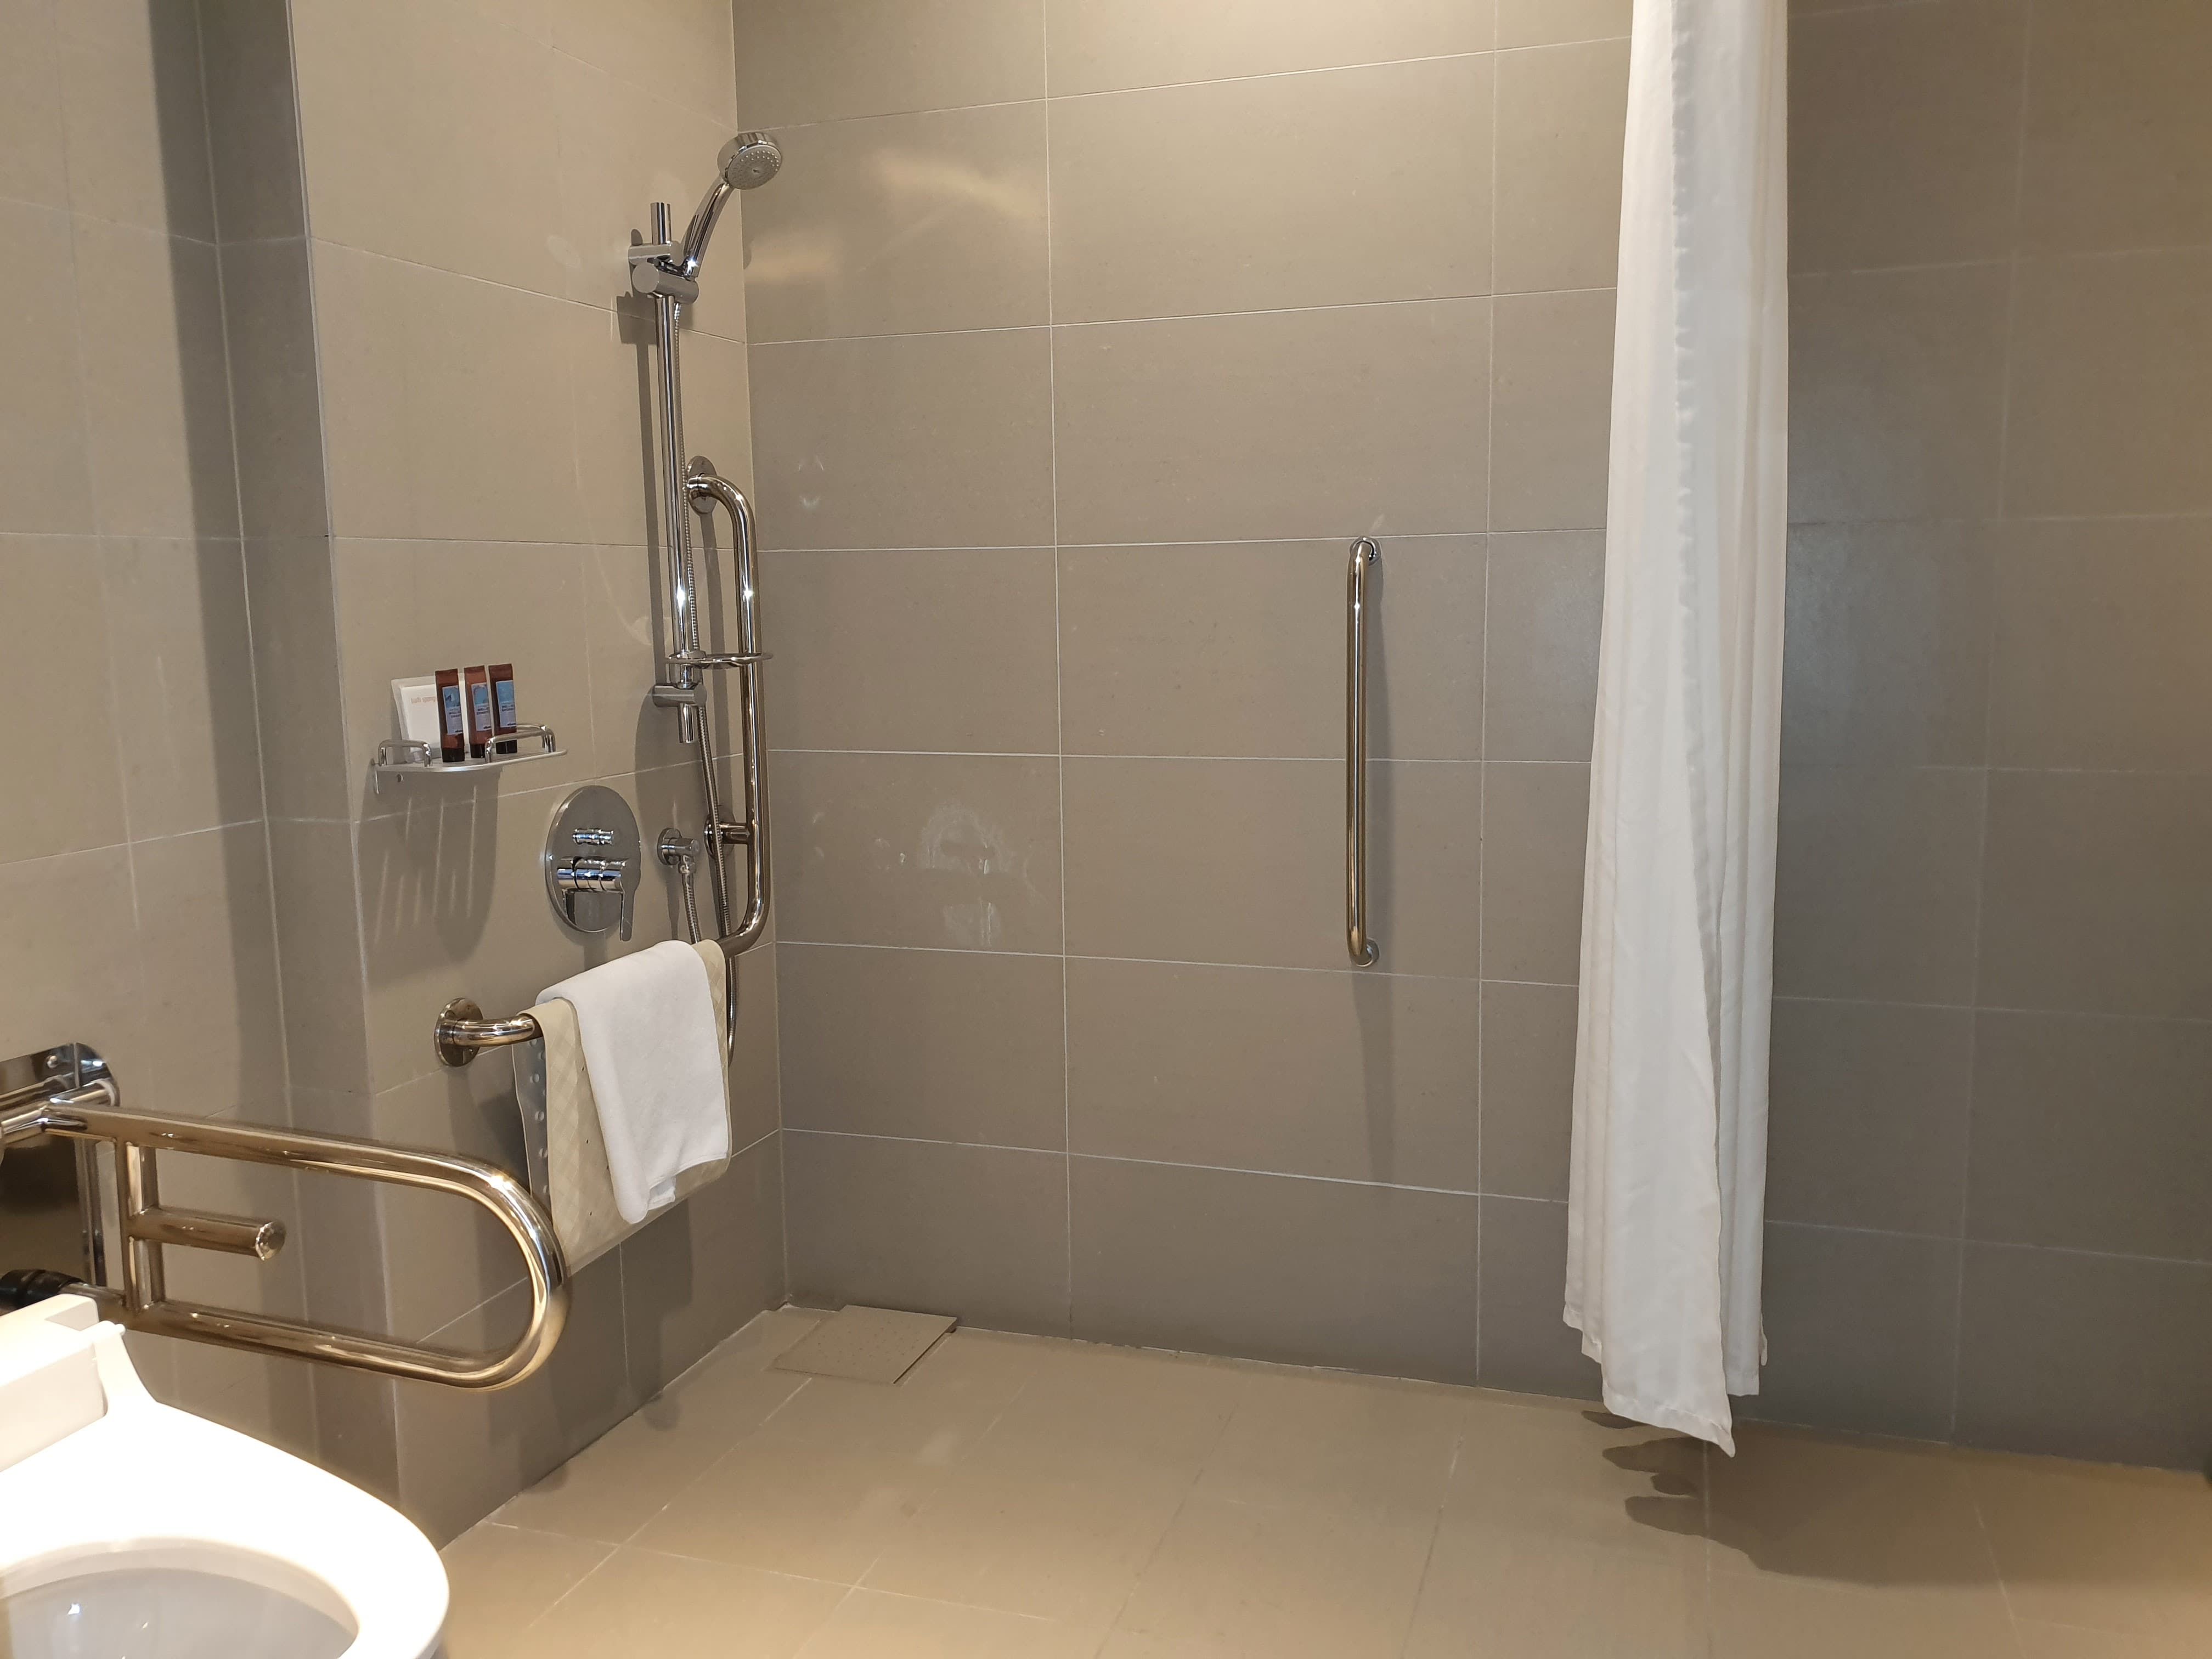 객실 내 화장실0 : 커튼이 설치된 화장실 내 샤워 공간